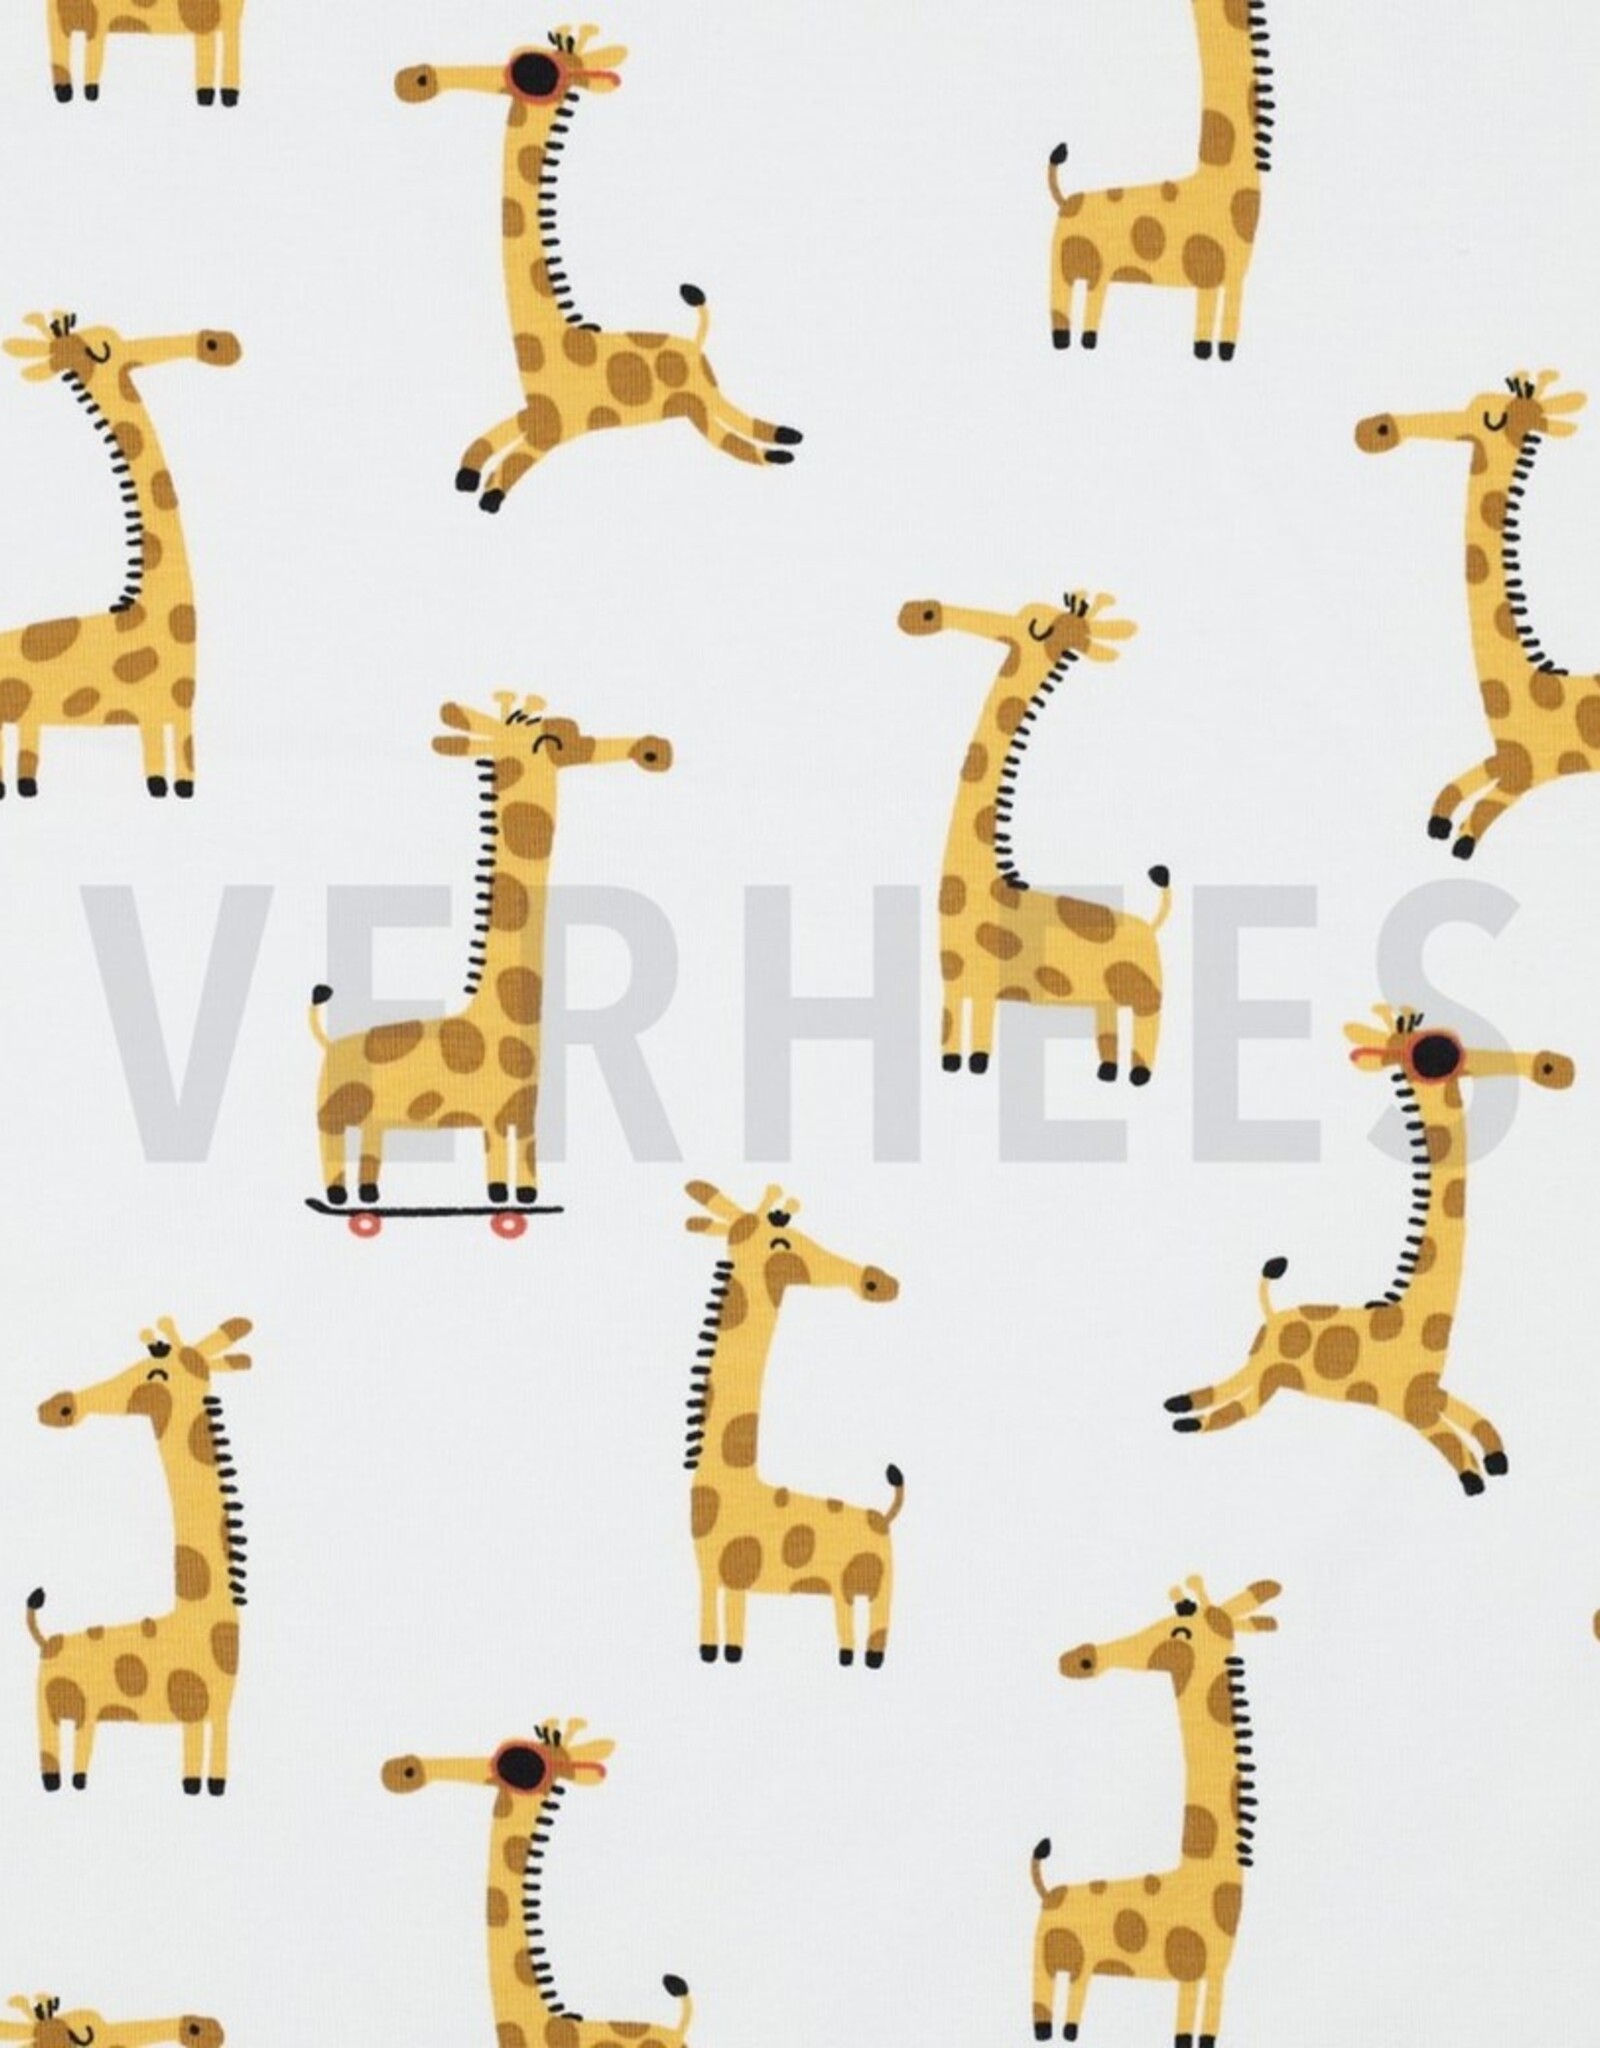 Stoffenschuur selectie Jersey giraffen wit